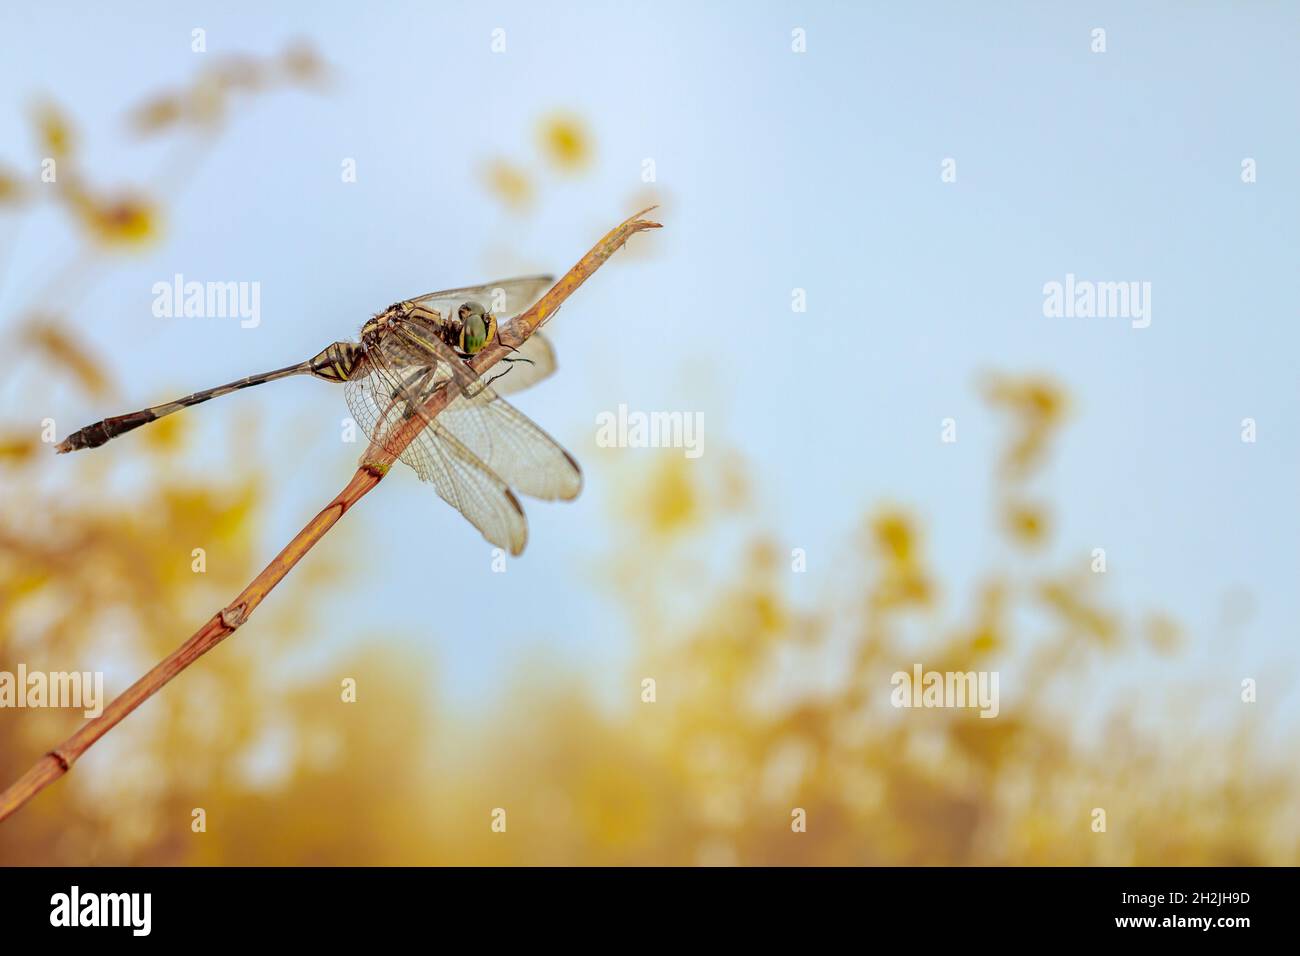 Eine Libelle, die auf einem kleinen Ast thront, vor dem Hintergrund von Büschen bei warmem Wetter, zum Thema Natur und Tierleben Stockfoto